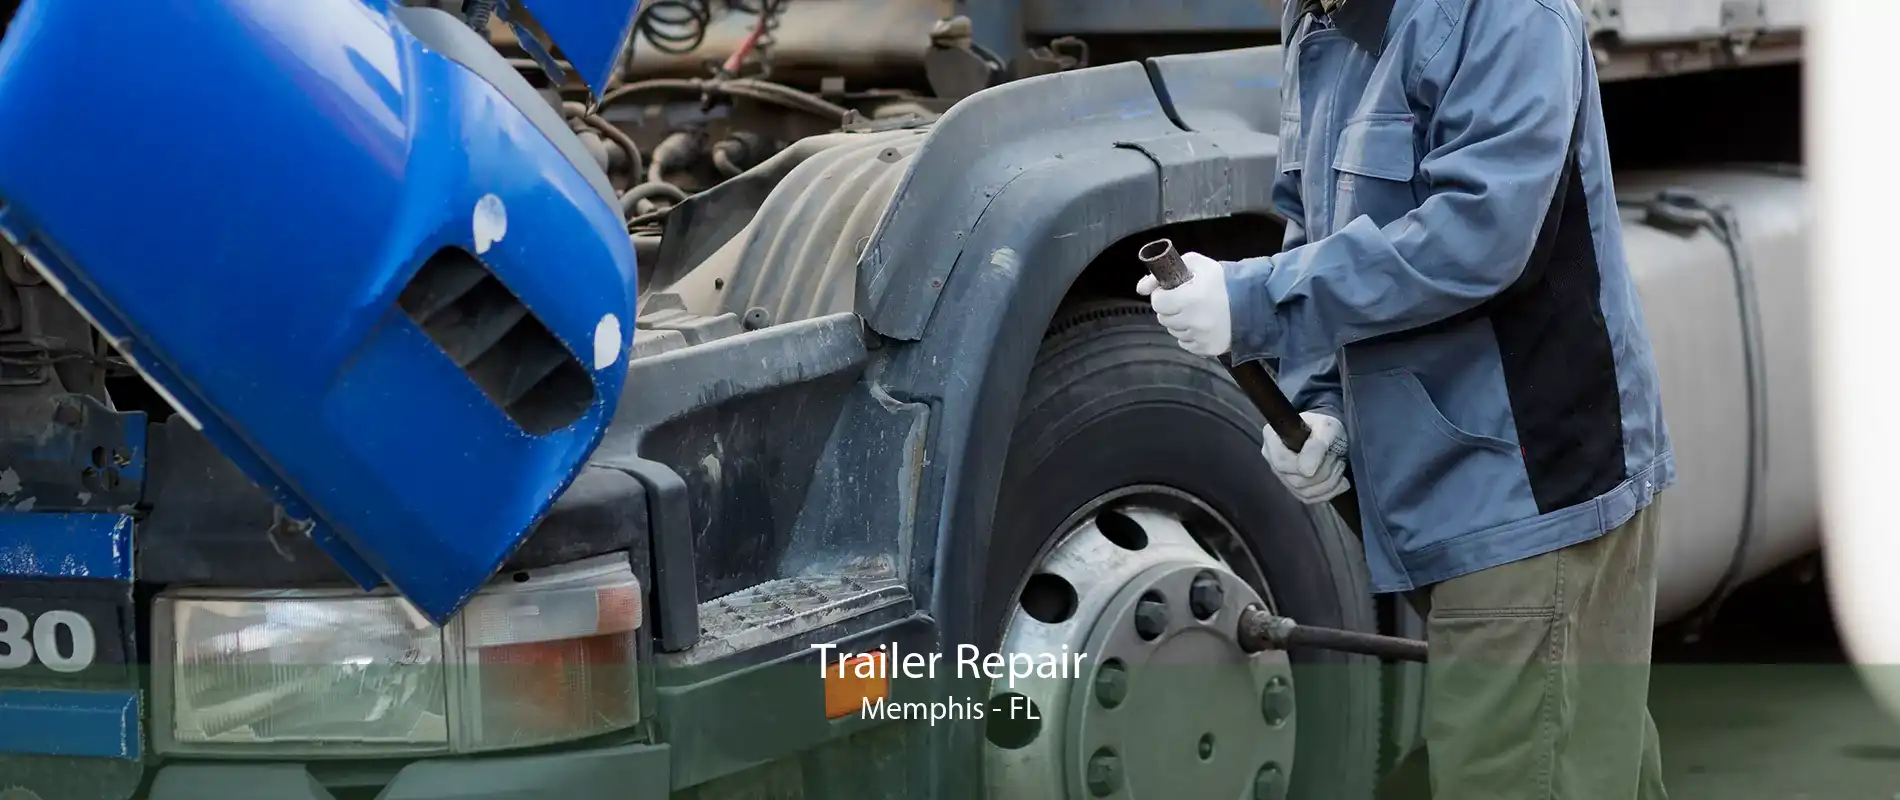 Trailer Repair Memphis - FL